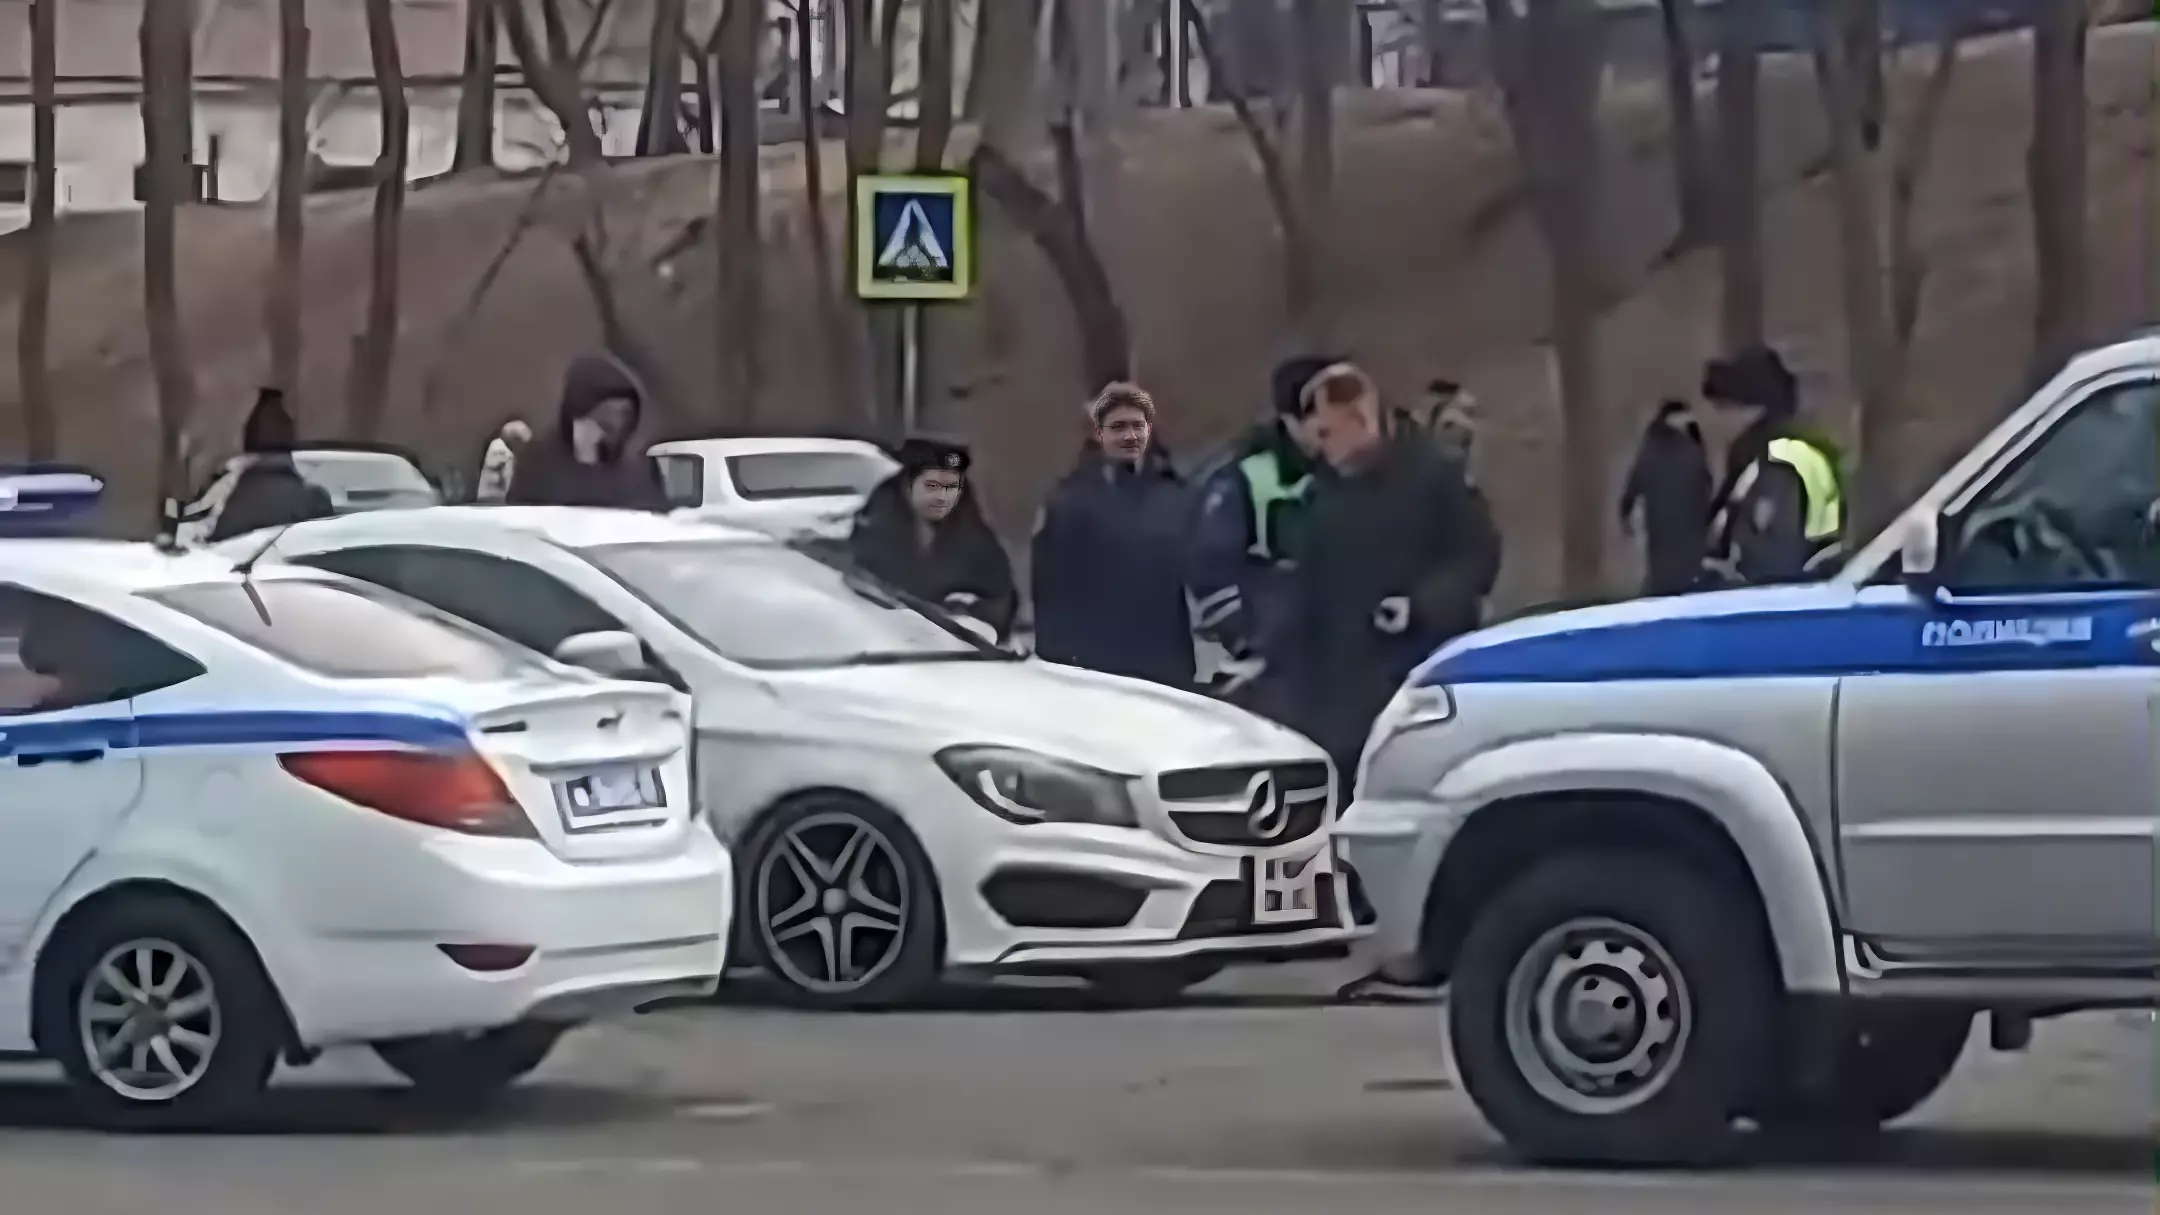 Силовики окружили автомобиль на Спортивной во Владивостоке — комментарий ГАИ, видео